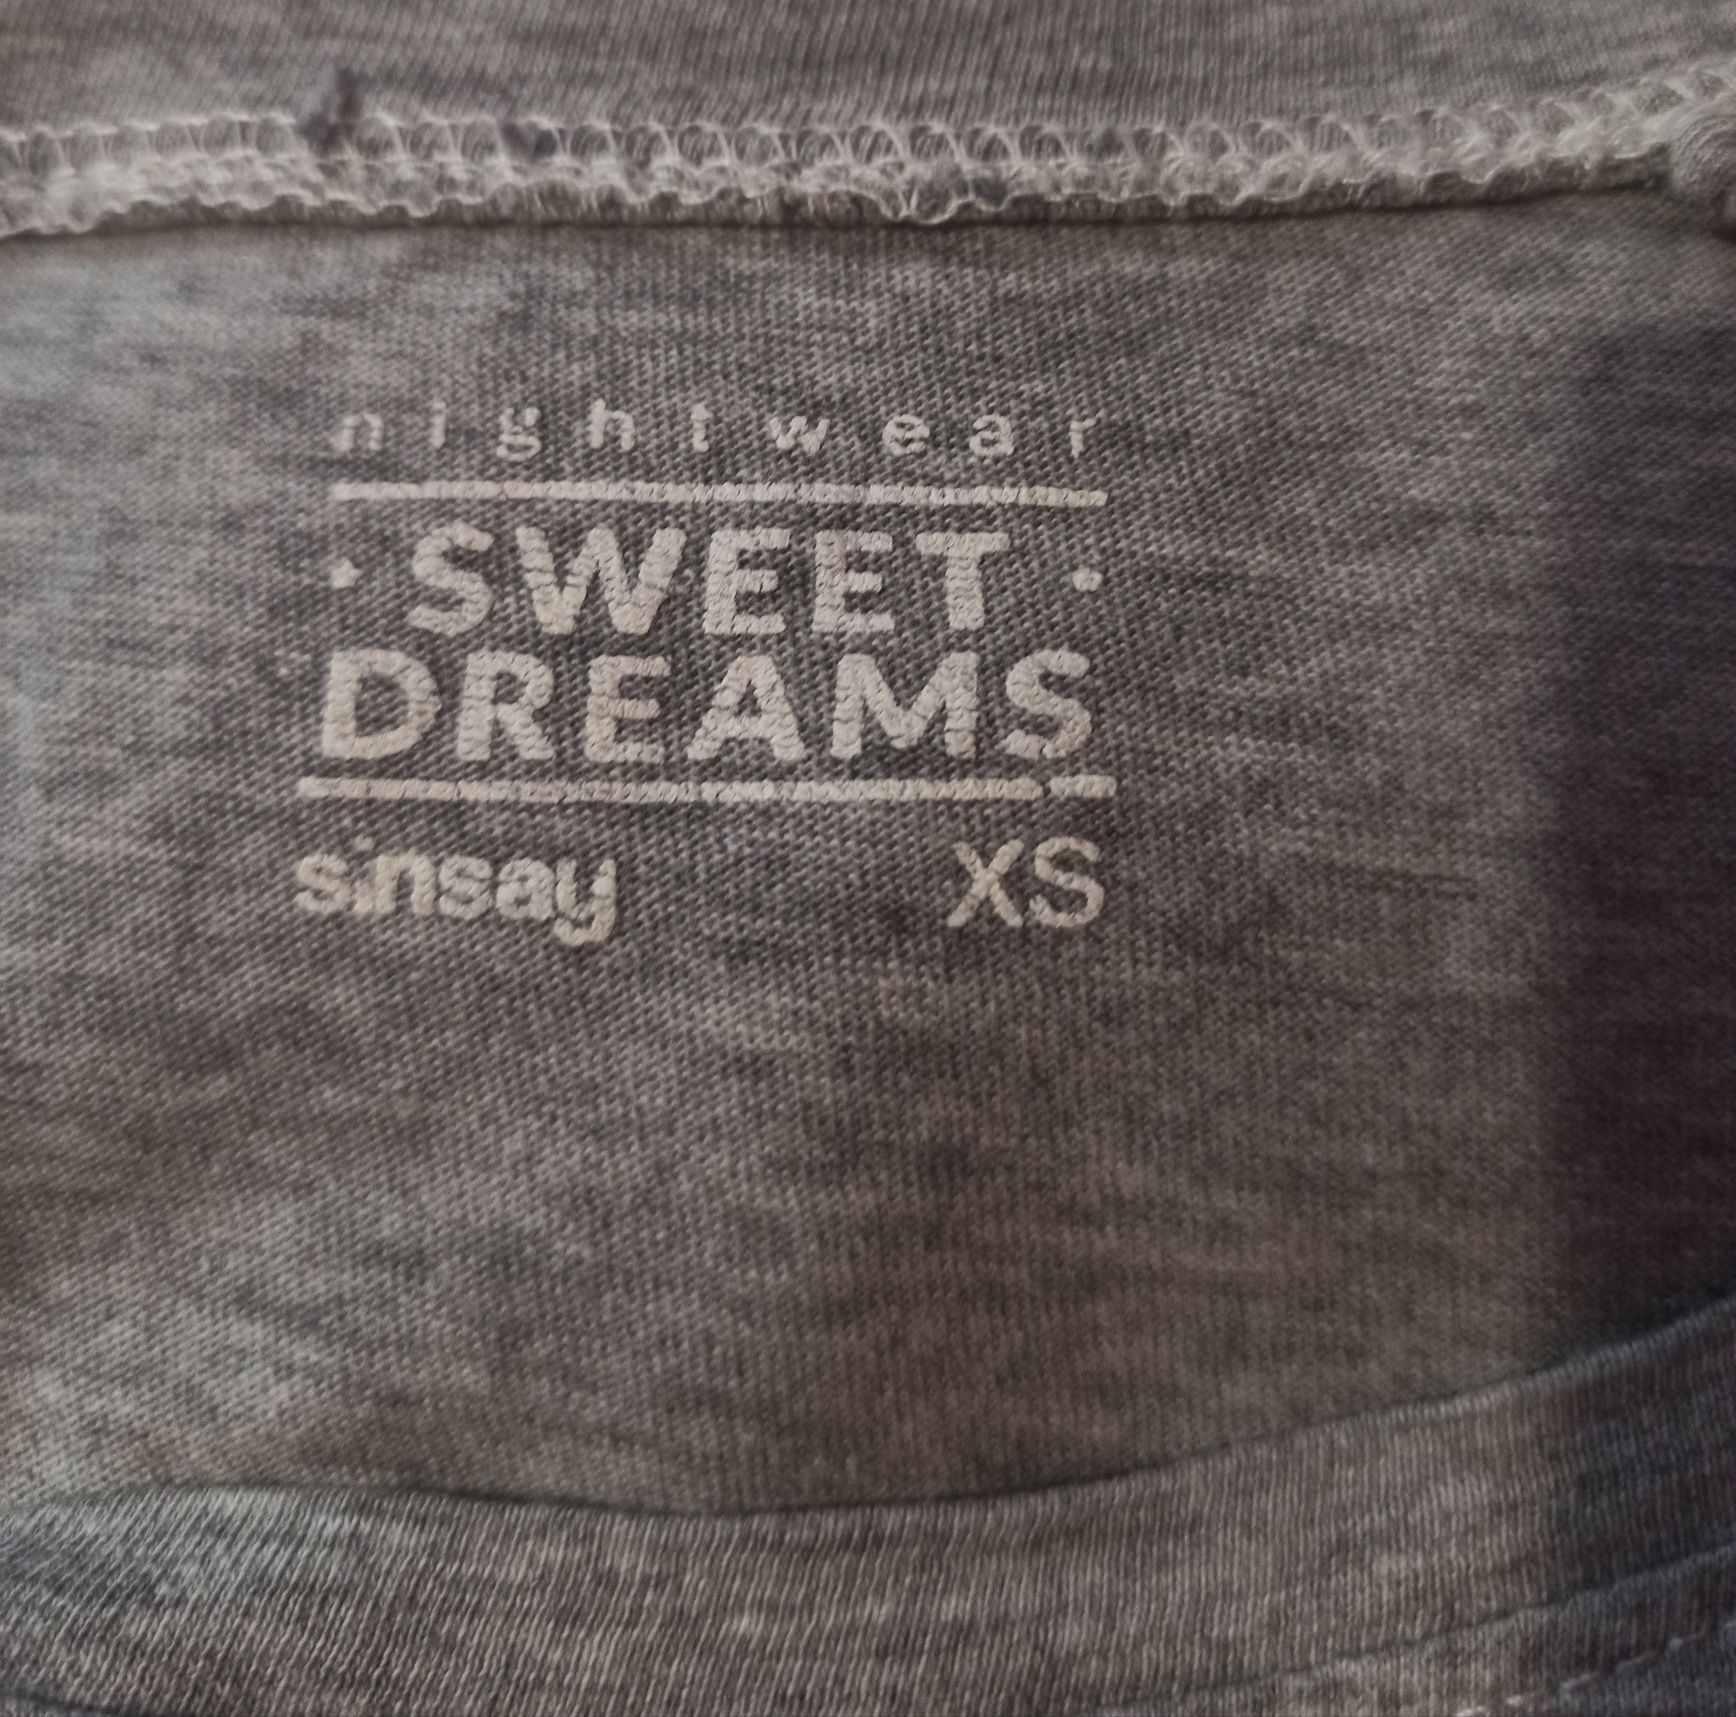 t-shirt 34 XS Sinsay sweet Dreams nightwear